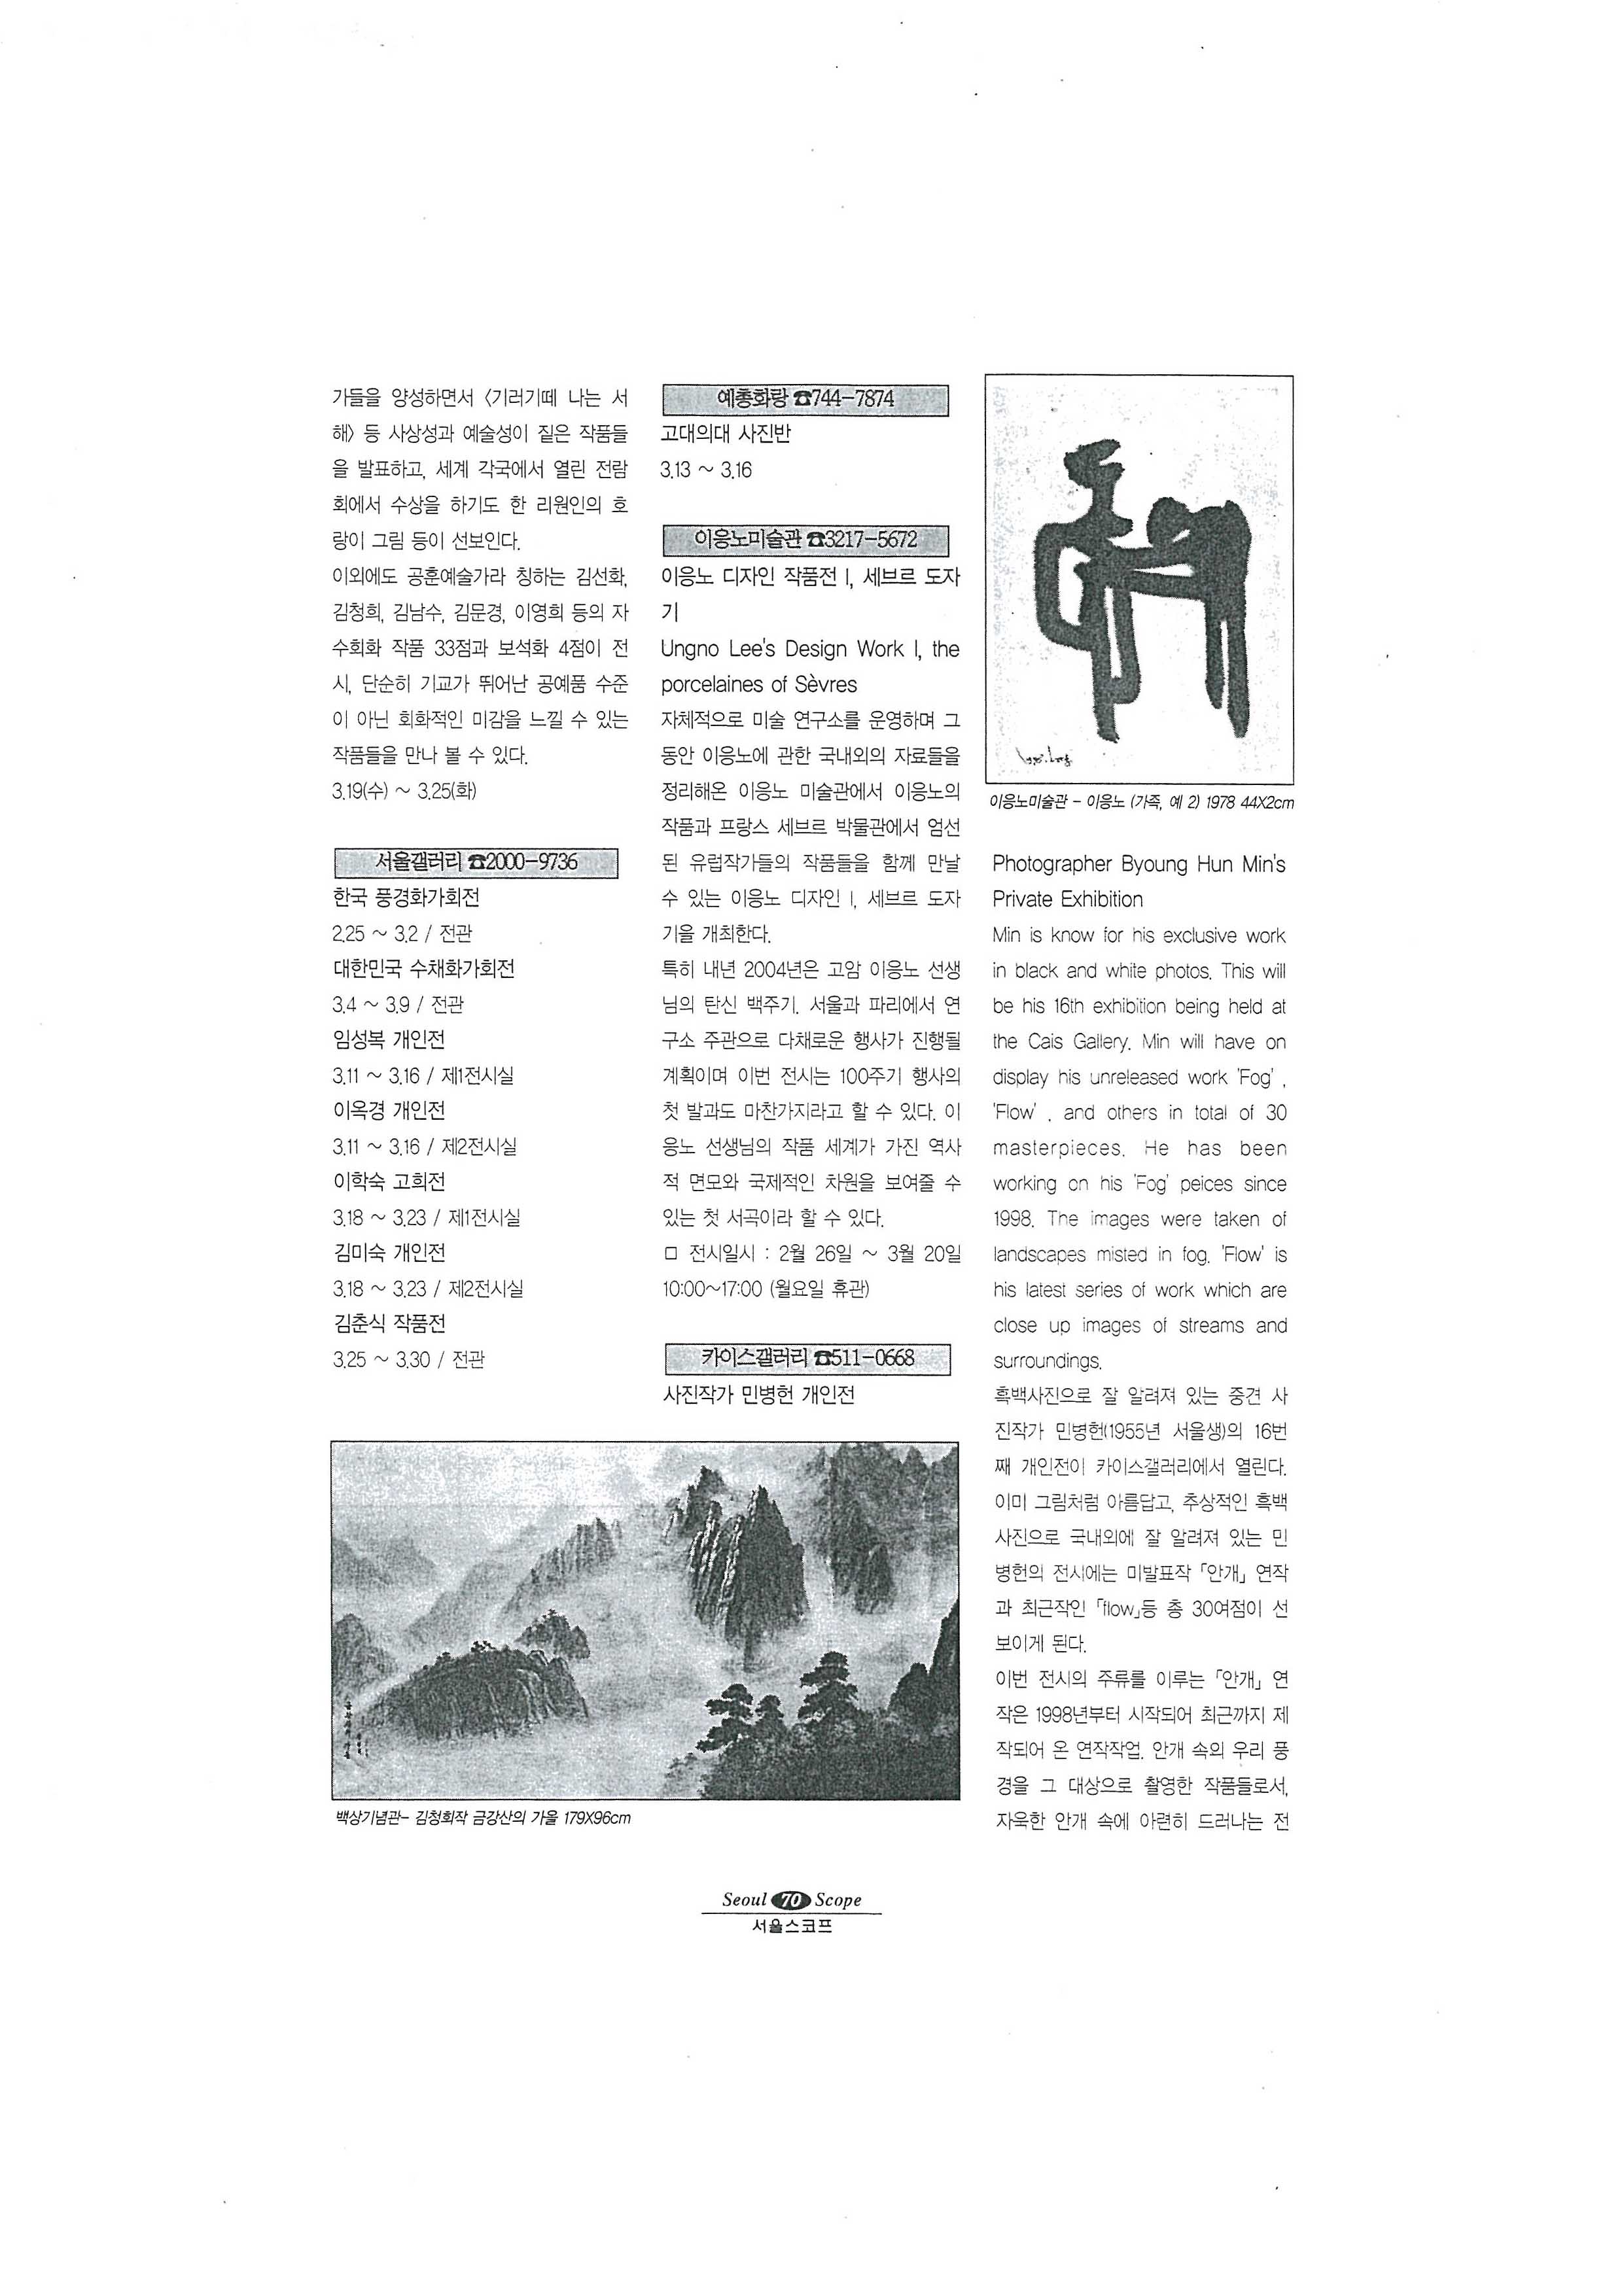 「이응노 디자인 작품전 Ⅰ, 세브르 도자기」, 『서울스코프』